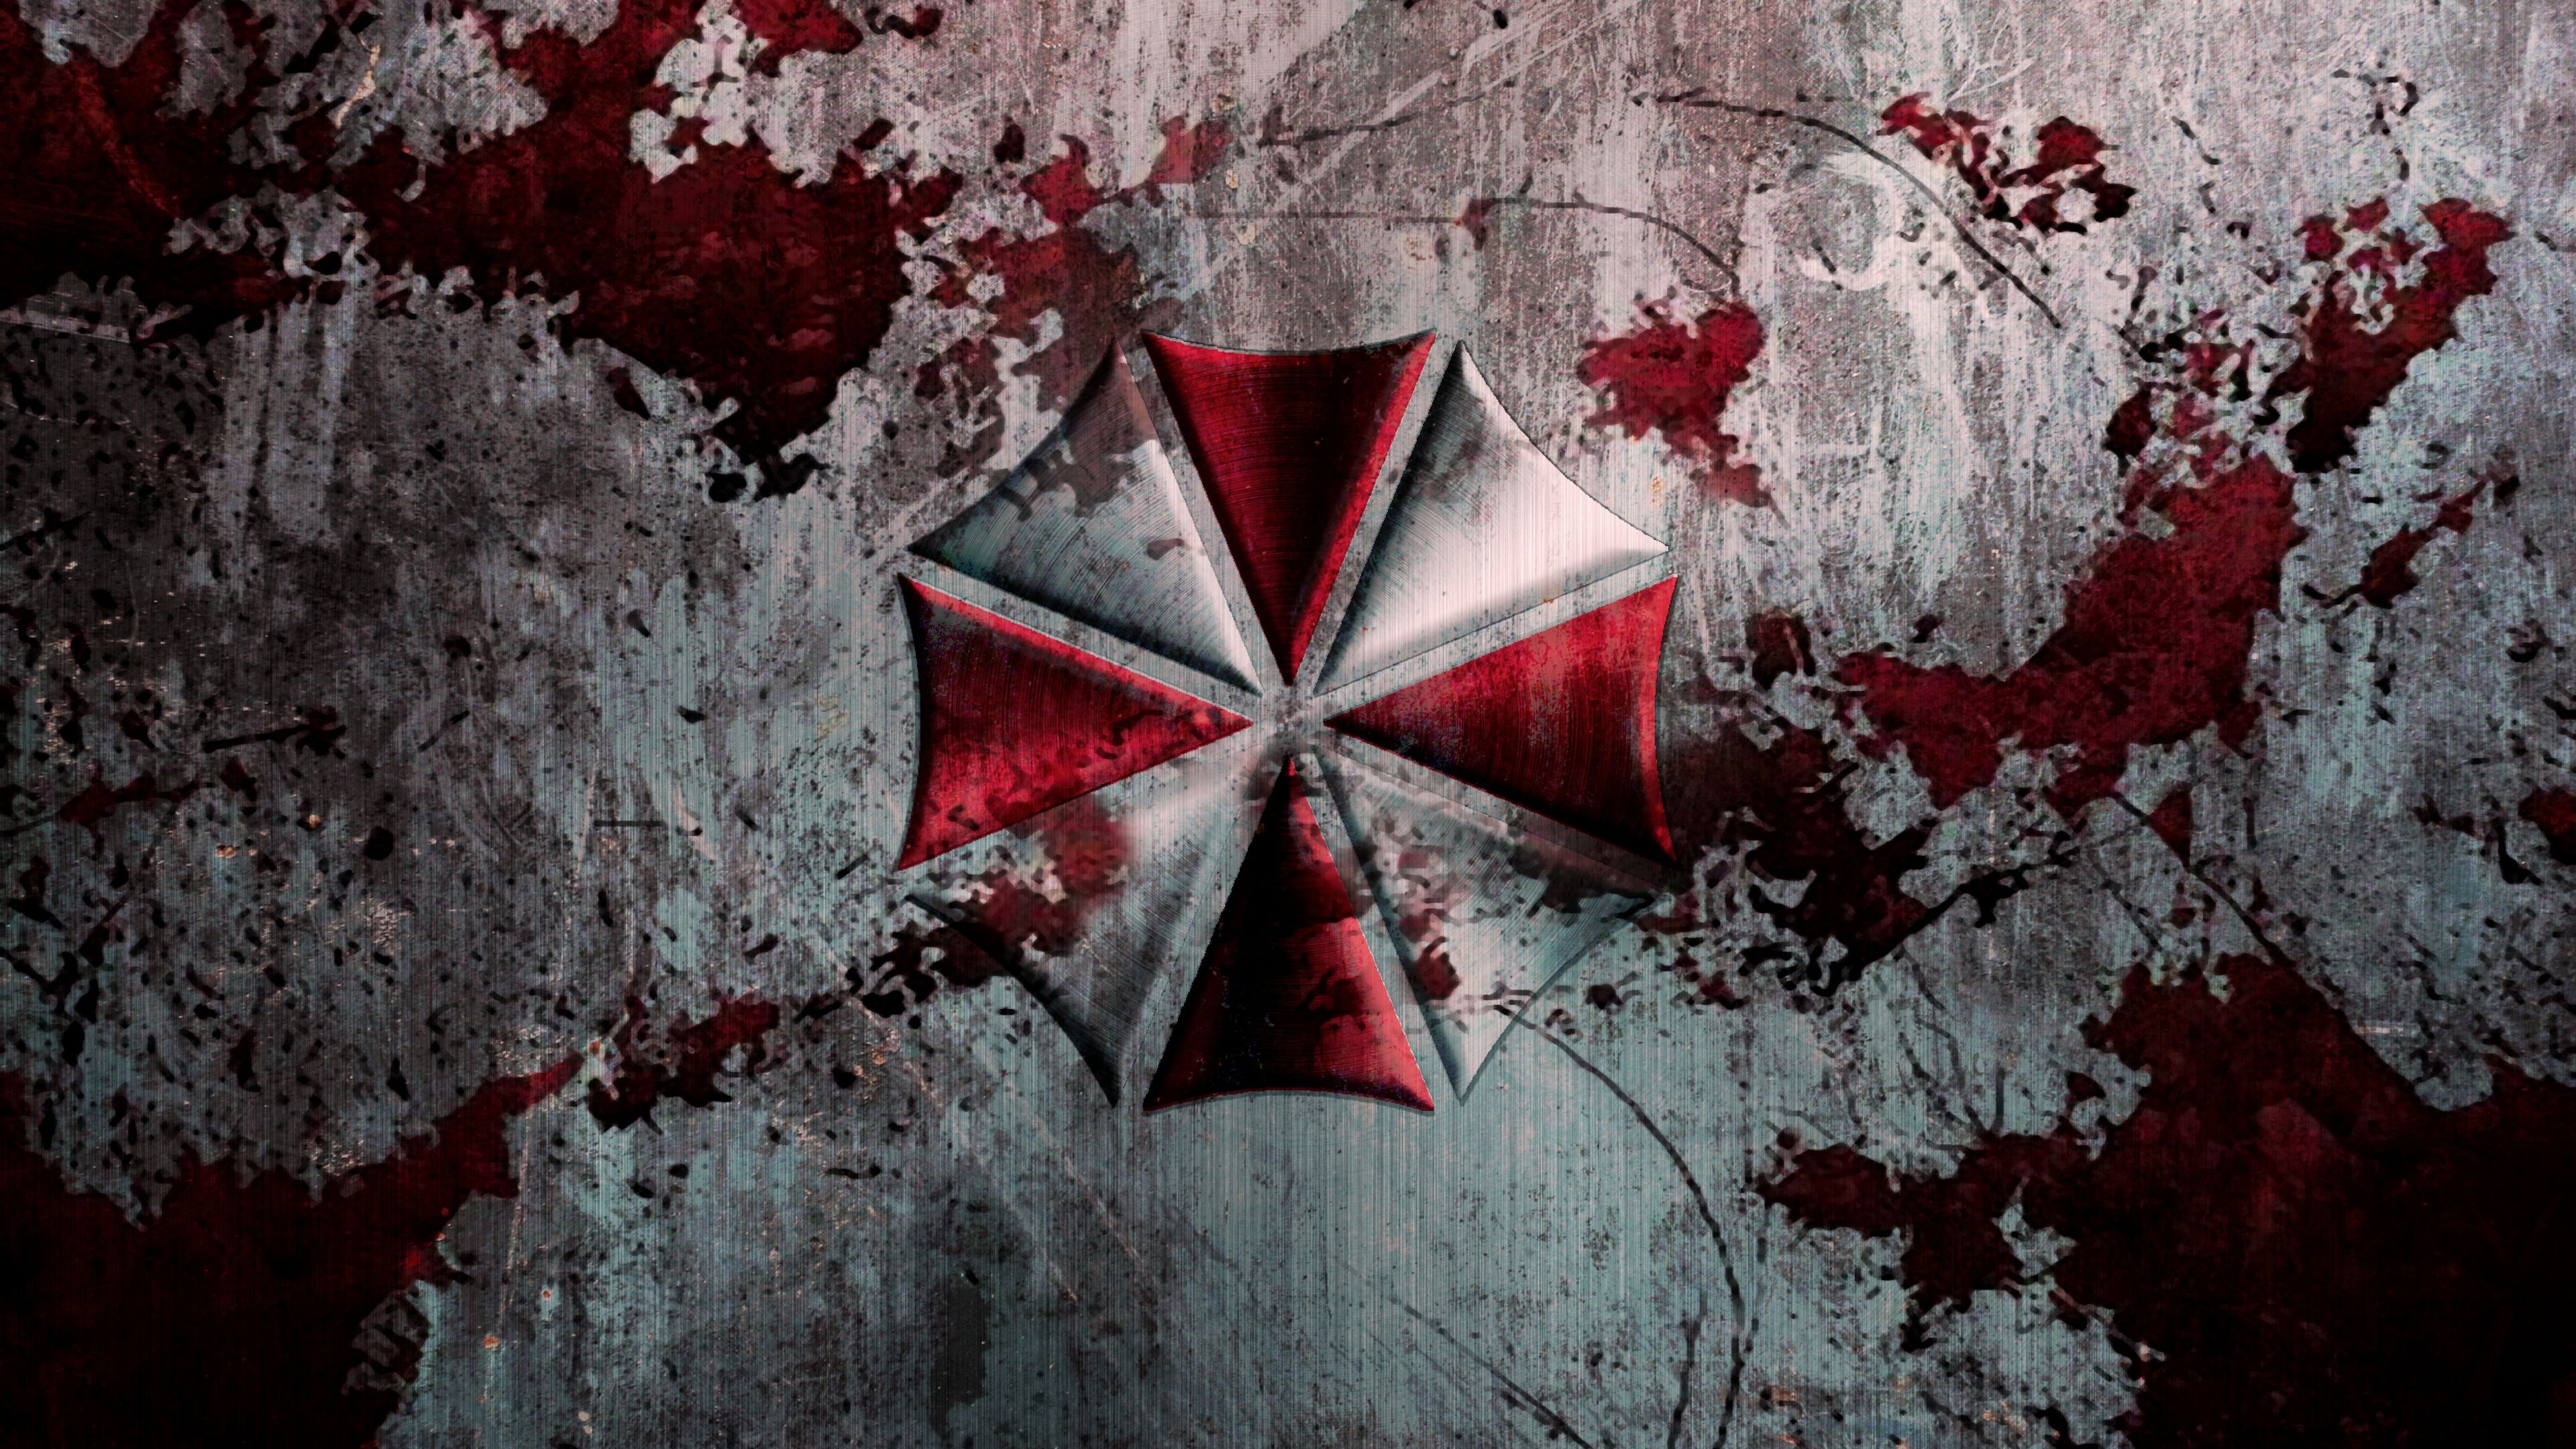 Resident Evil HD Wallpaper. Resident evil movie, Resident evil